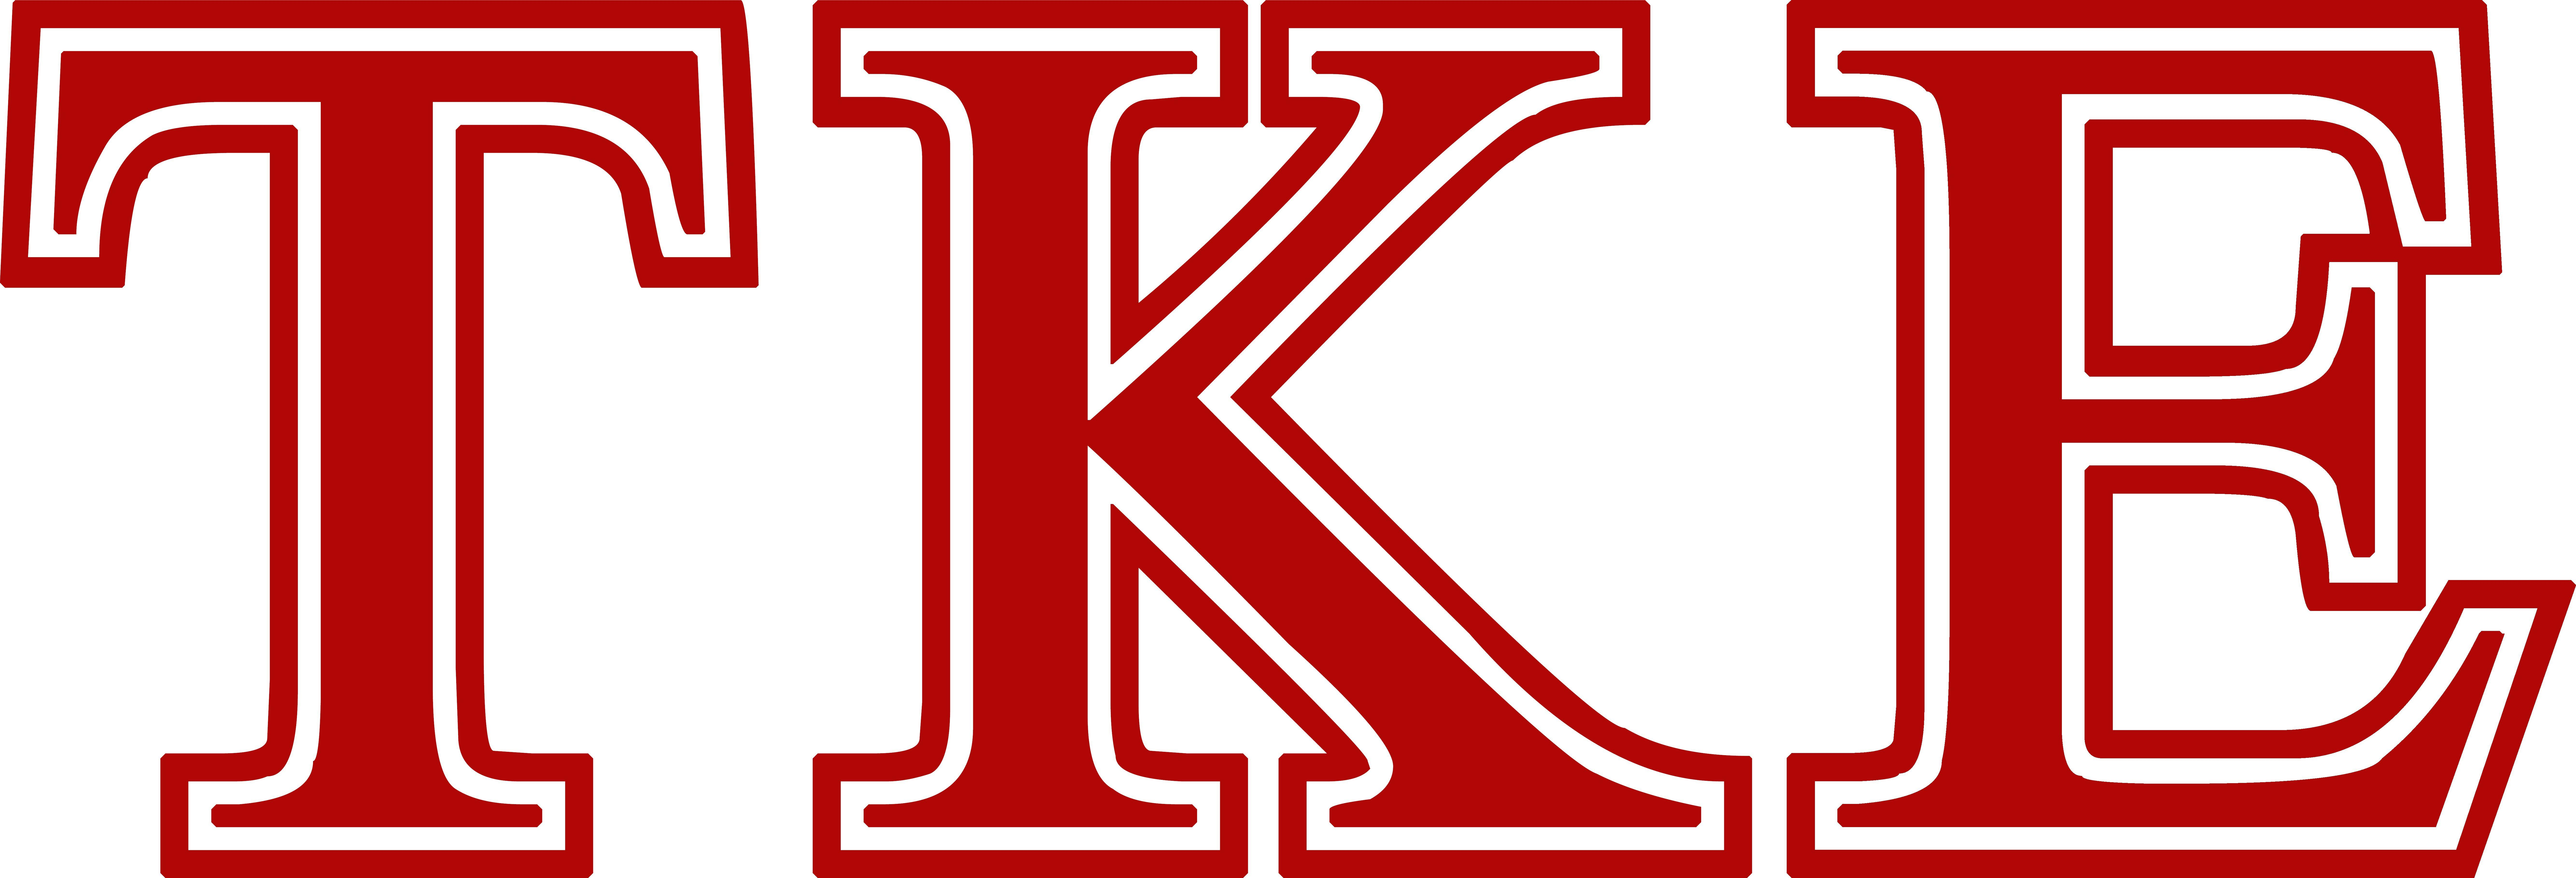 TKE Logo - Tke Logos